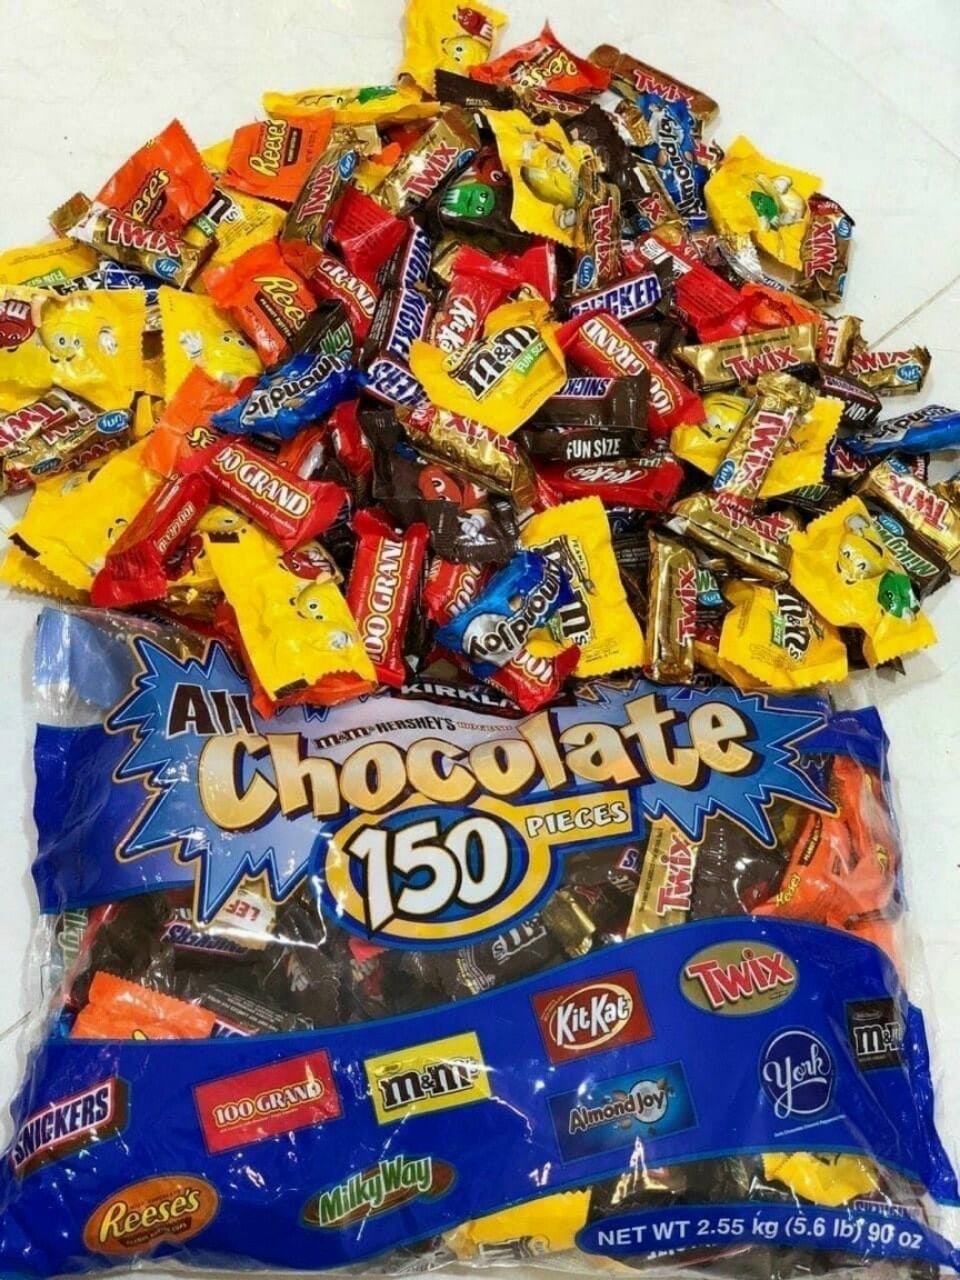 Kẹo Socola tổng hợp tách lẻ 0,5kg All Chocolate 150 Pieces 2.55kg của Mỹ